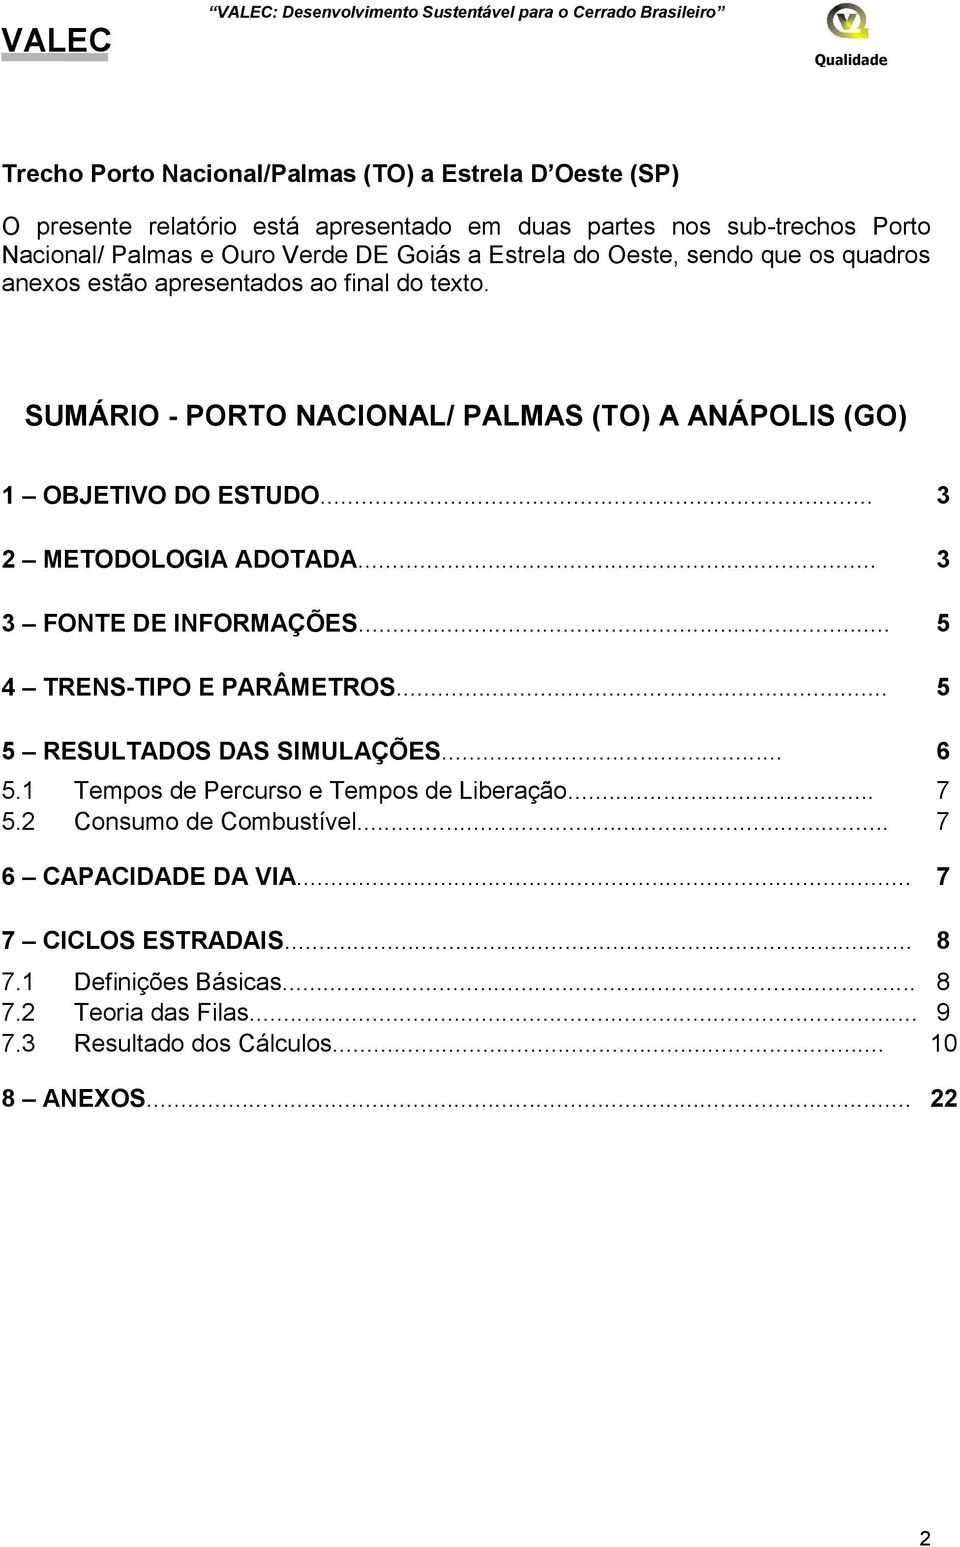 SUMÁRIO - PORTO NACIONAL/ PALMAS (TO) A ANÁPOLIS (GO) 1 OBJETIVO DO ESTUDO... 3 2 METODOLOGIA ADOTADA... 3 3 FONTE DE INFORMAÇÕES... 5 4 TRENS-TIPO E PARÂMETROS... 5 5 RESULTADOS DAS SIMULAÇÕES.